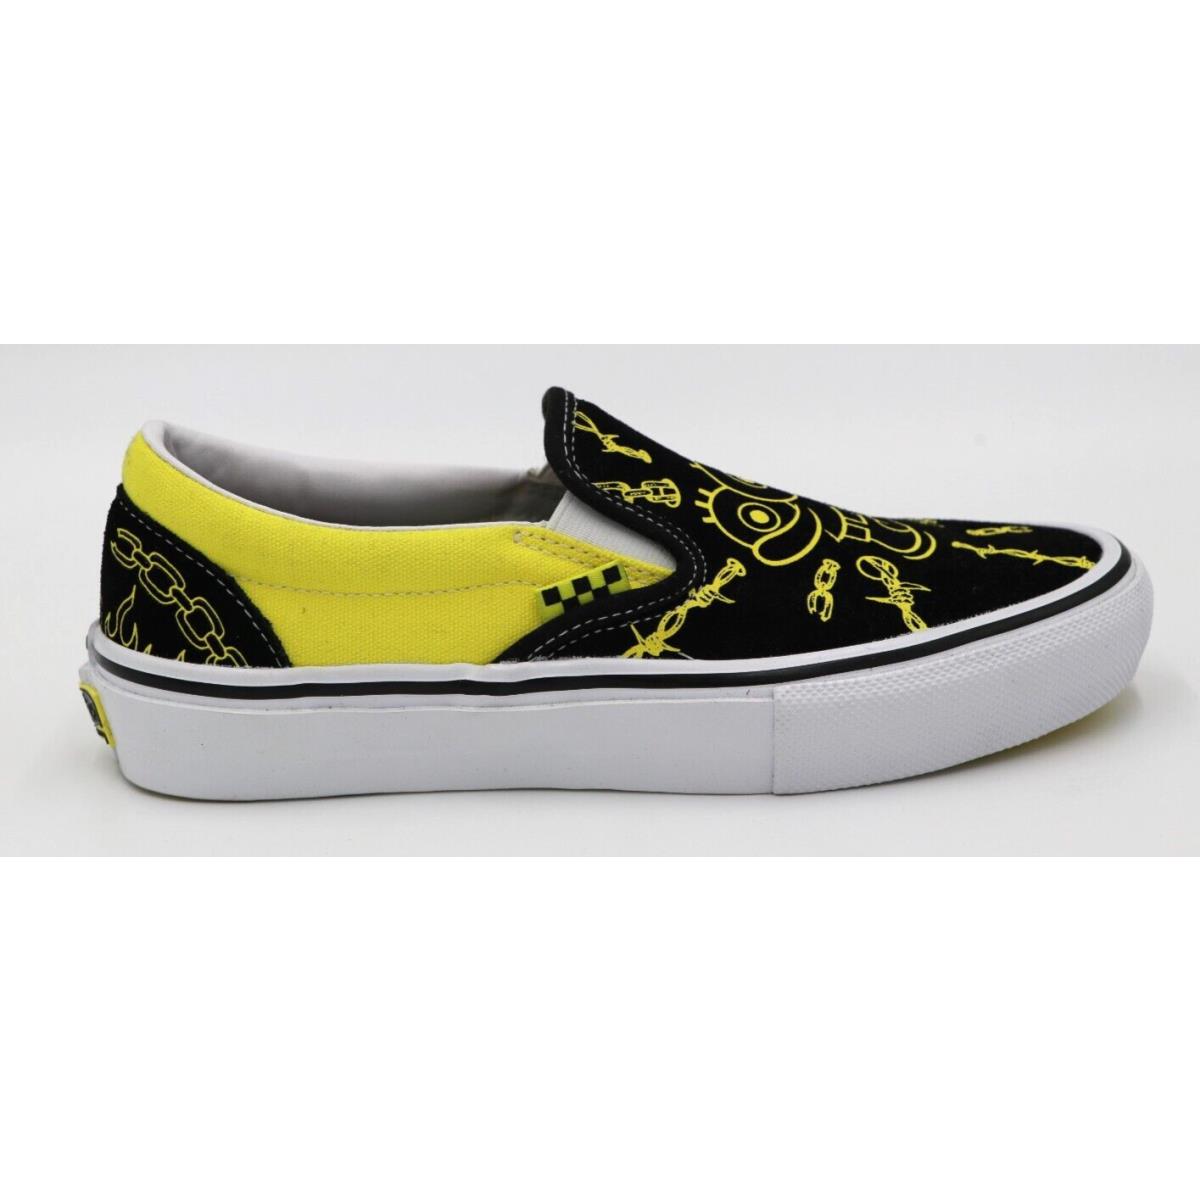 Vans Spongebob Squarepants Skate Slip-on Gigliotti Skate Shoes